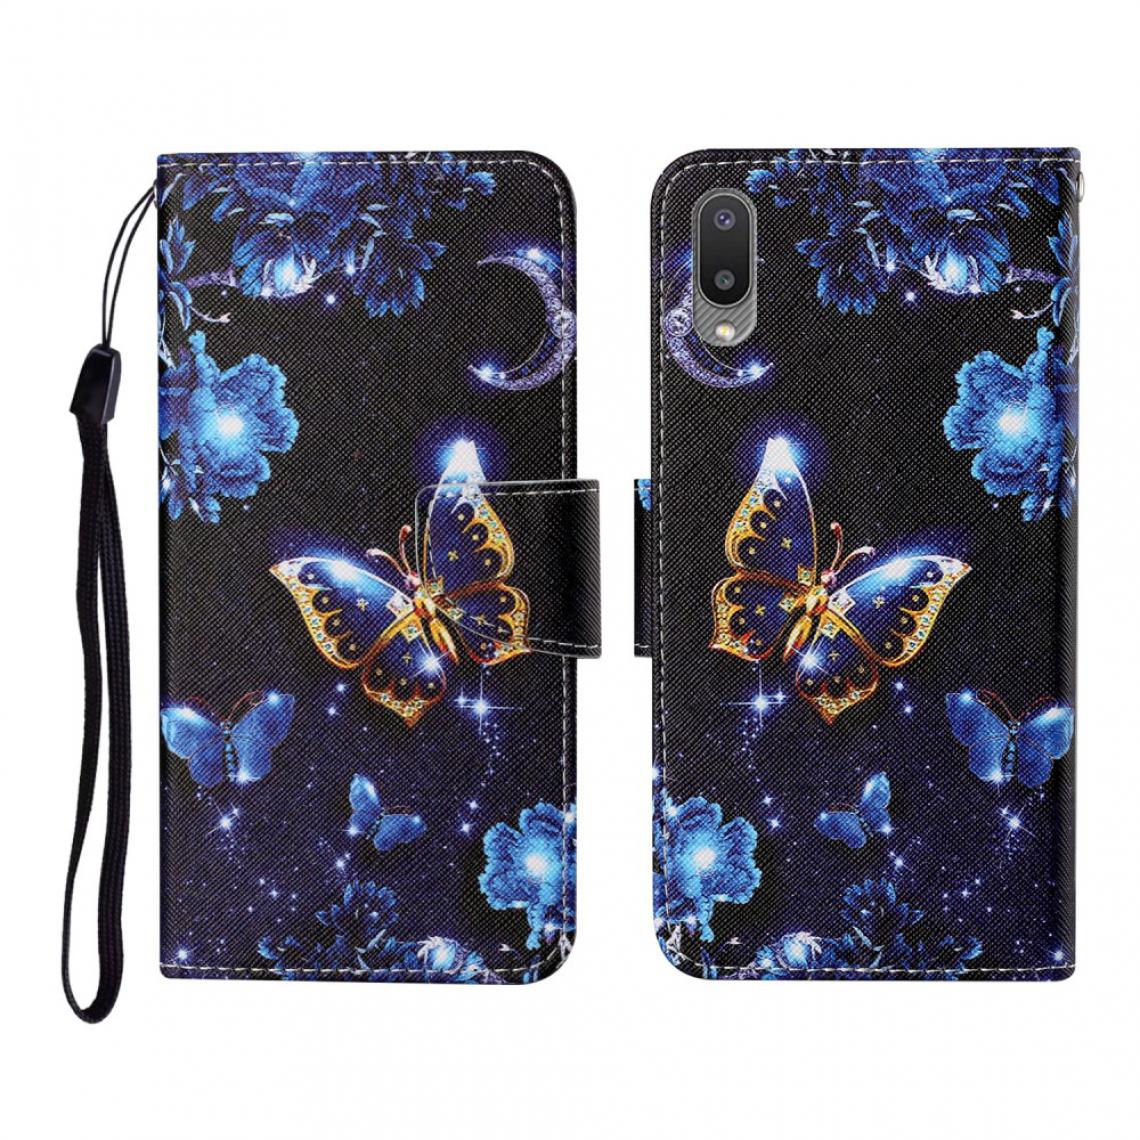 Other - Etui en PU Impression de motifs élégants Texture croisée avec support papillon pour votre Samsung Galaxy A02/M02 - Coque, étui smartphone